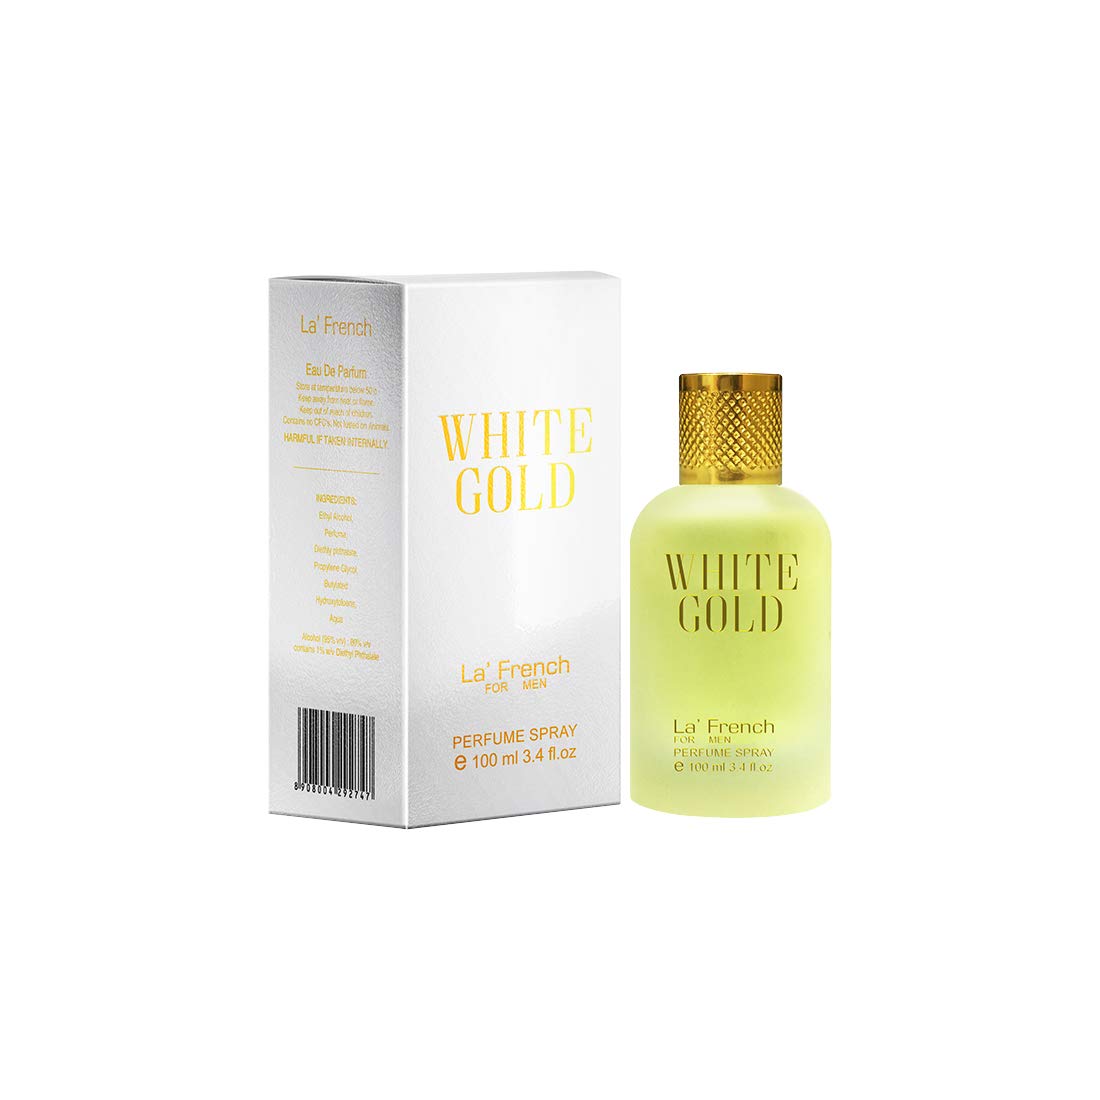 La’ French White Gold For Men Eau de Parfum 3